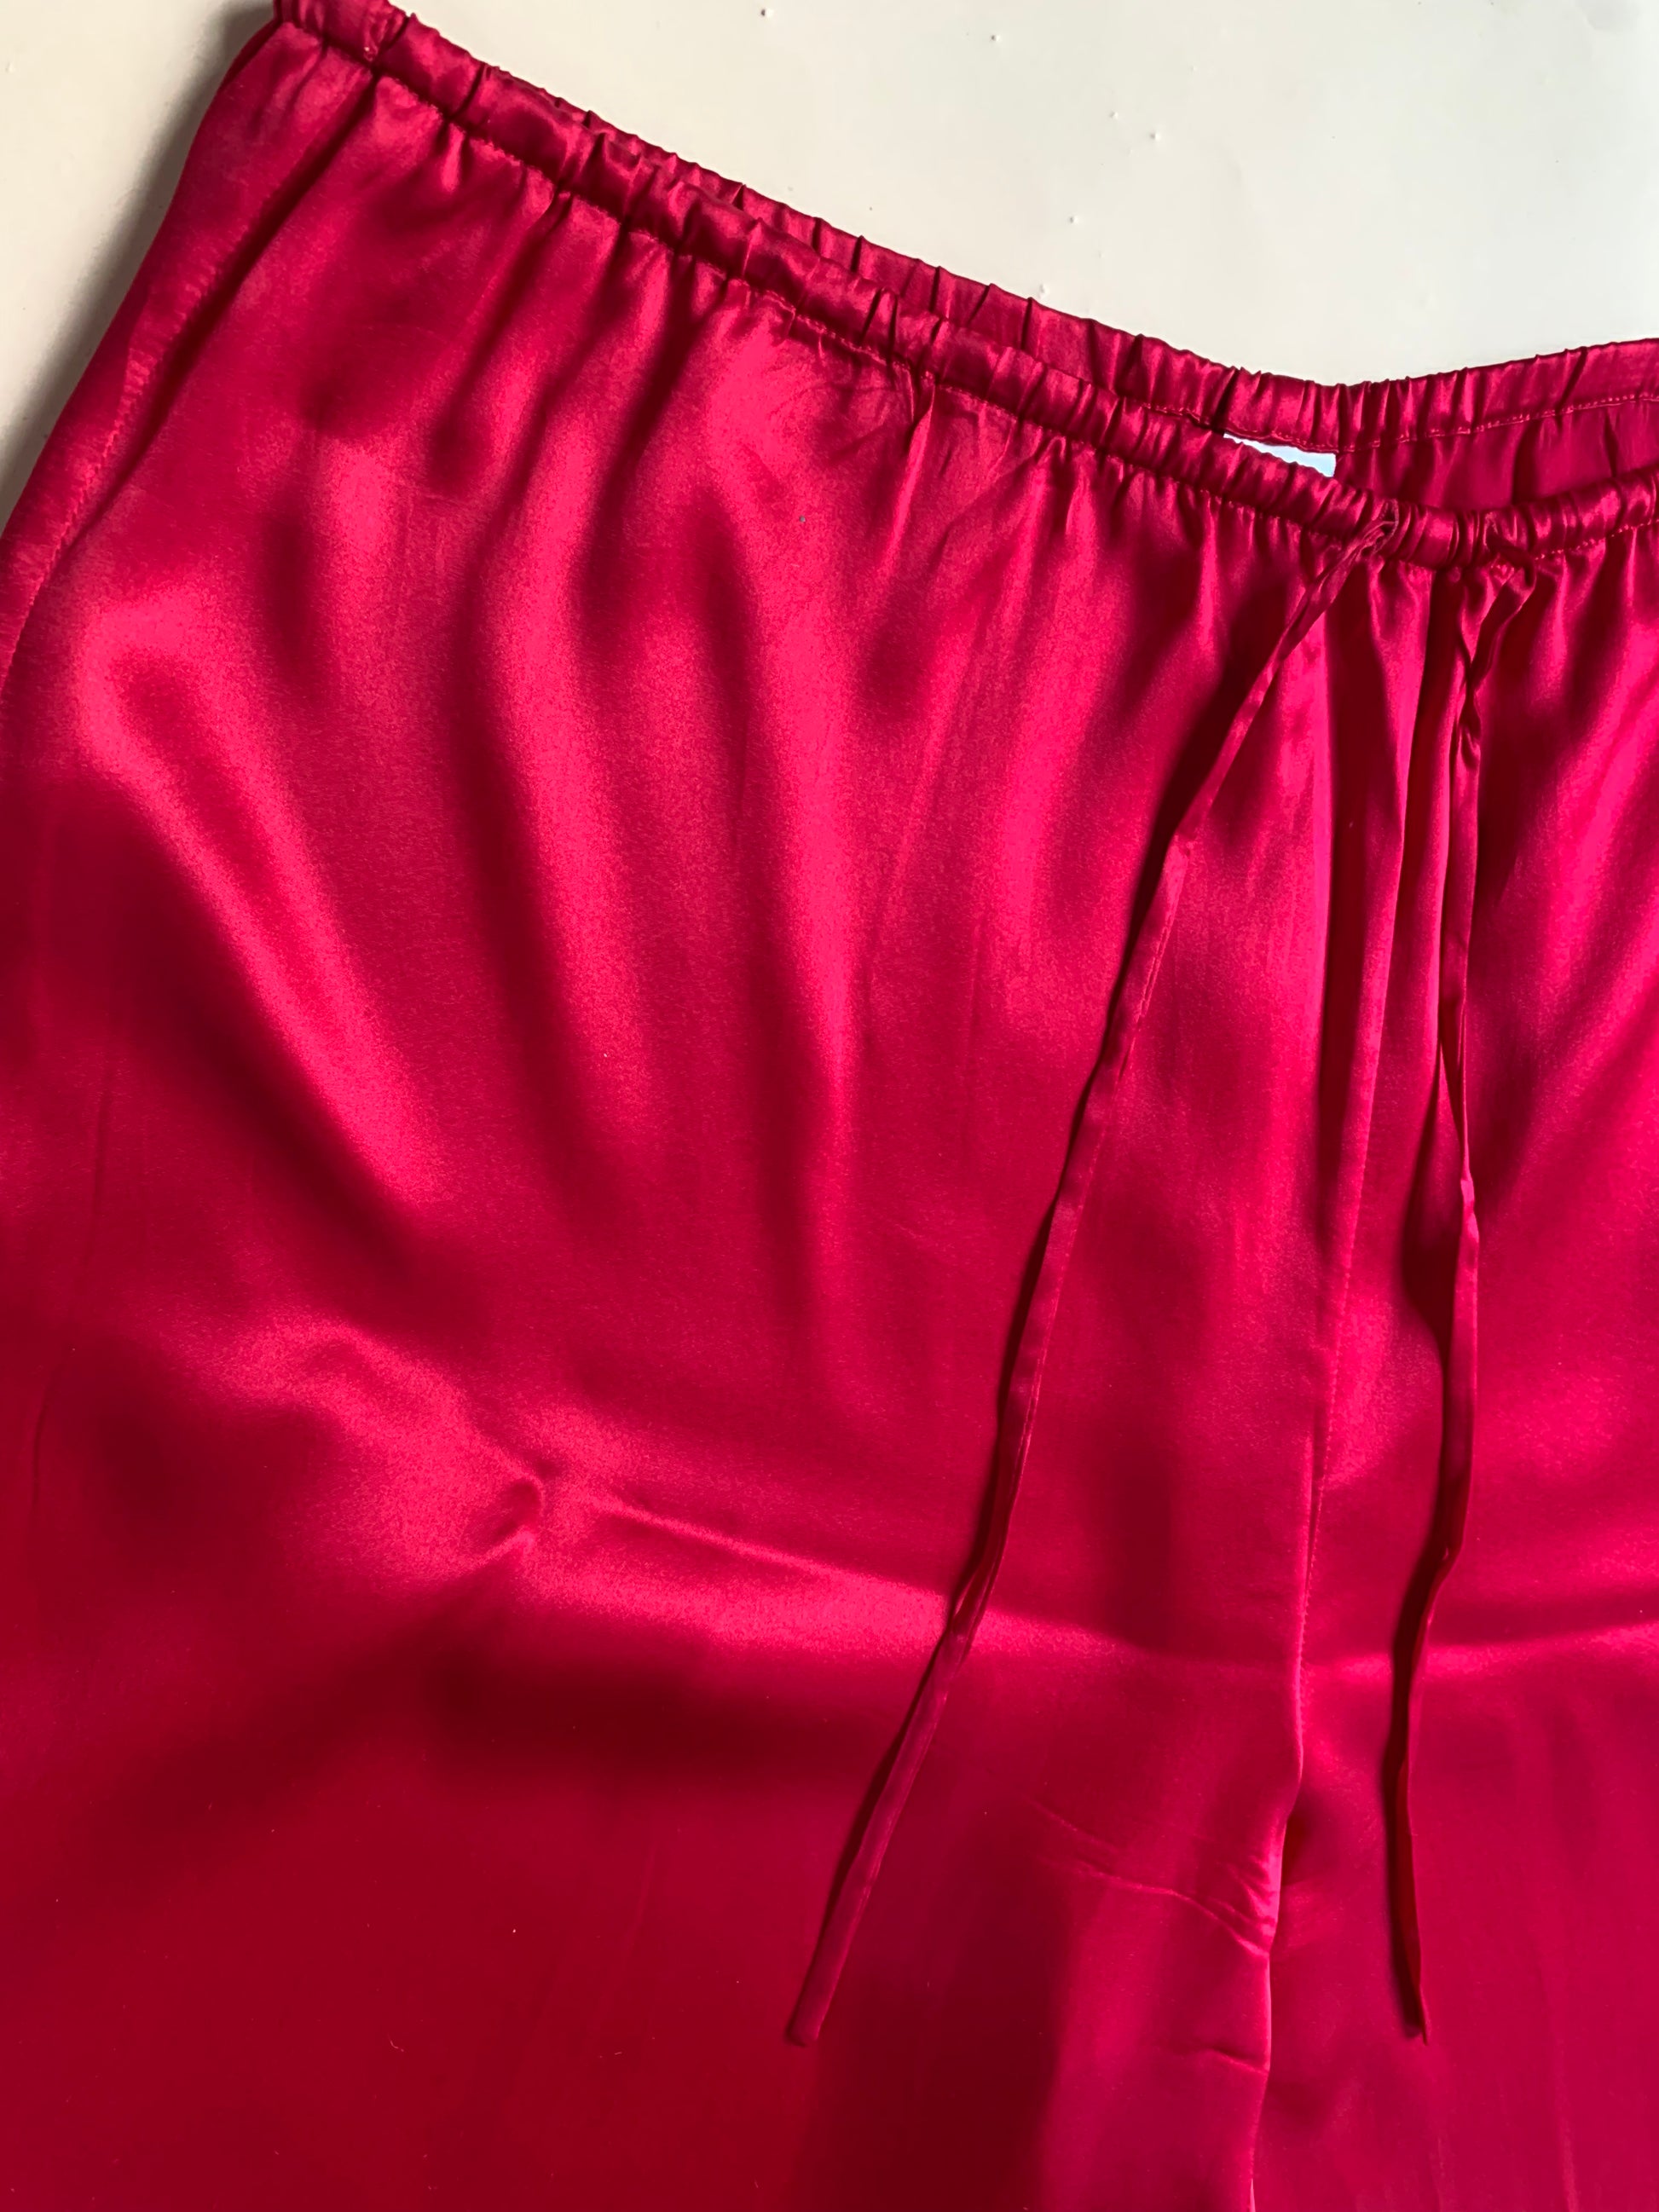 Scarlet Red Satin Pants